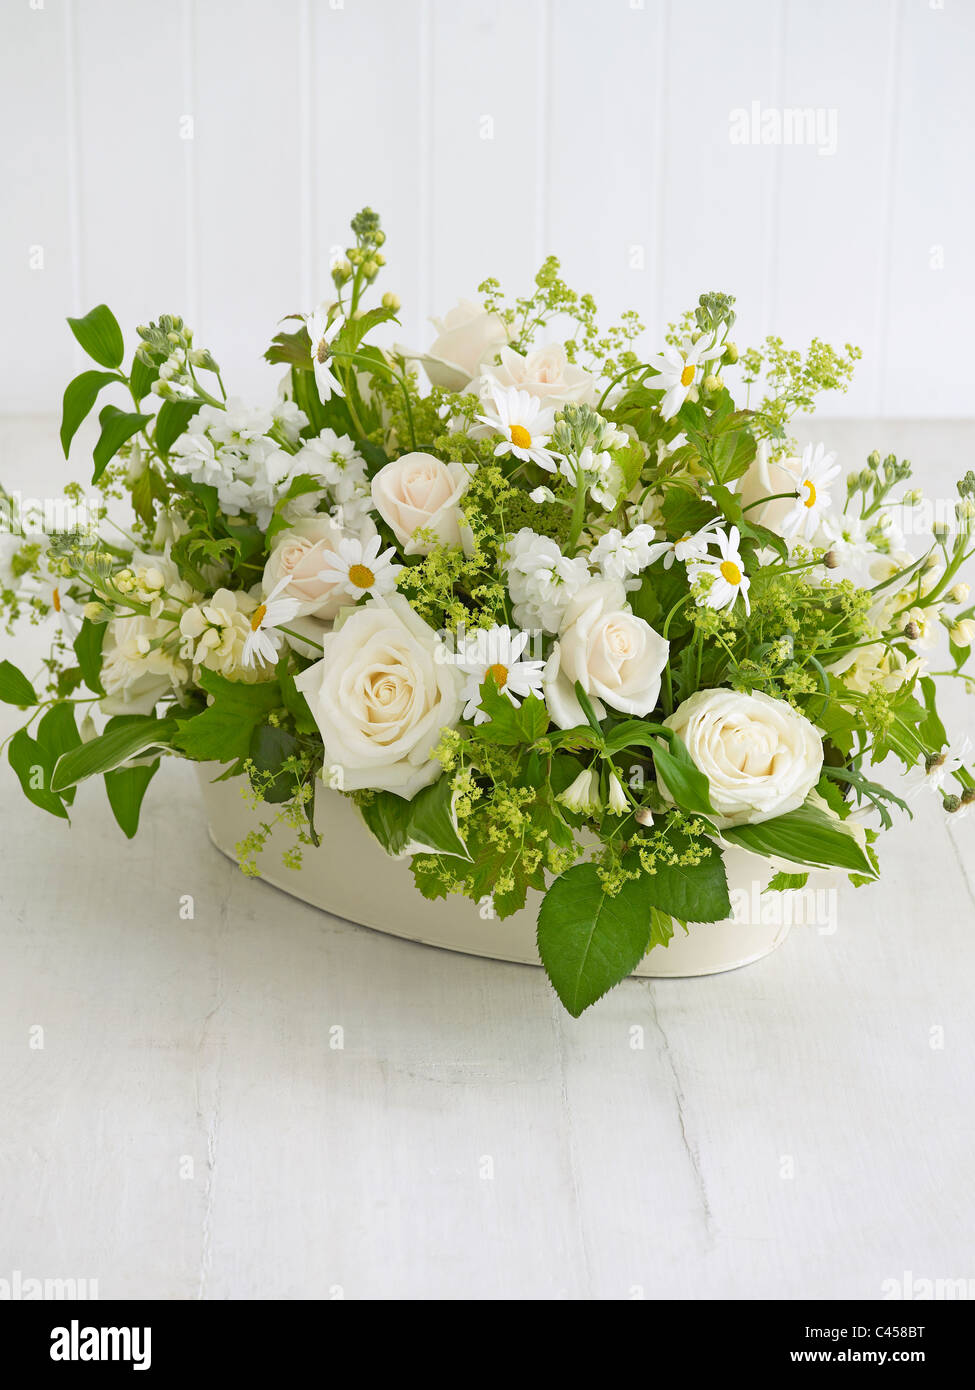 Trug contenente la disposizione dei fiori bianchi, compresi marguerites, rose, sigillo di Salomone, stock bianco Foto Stock